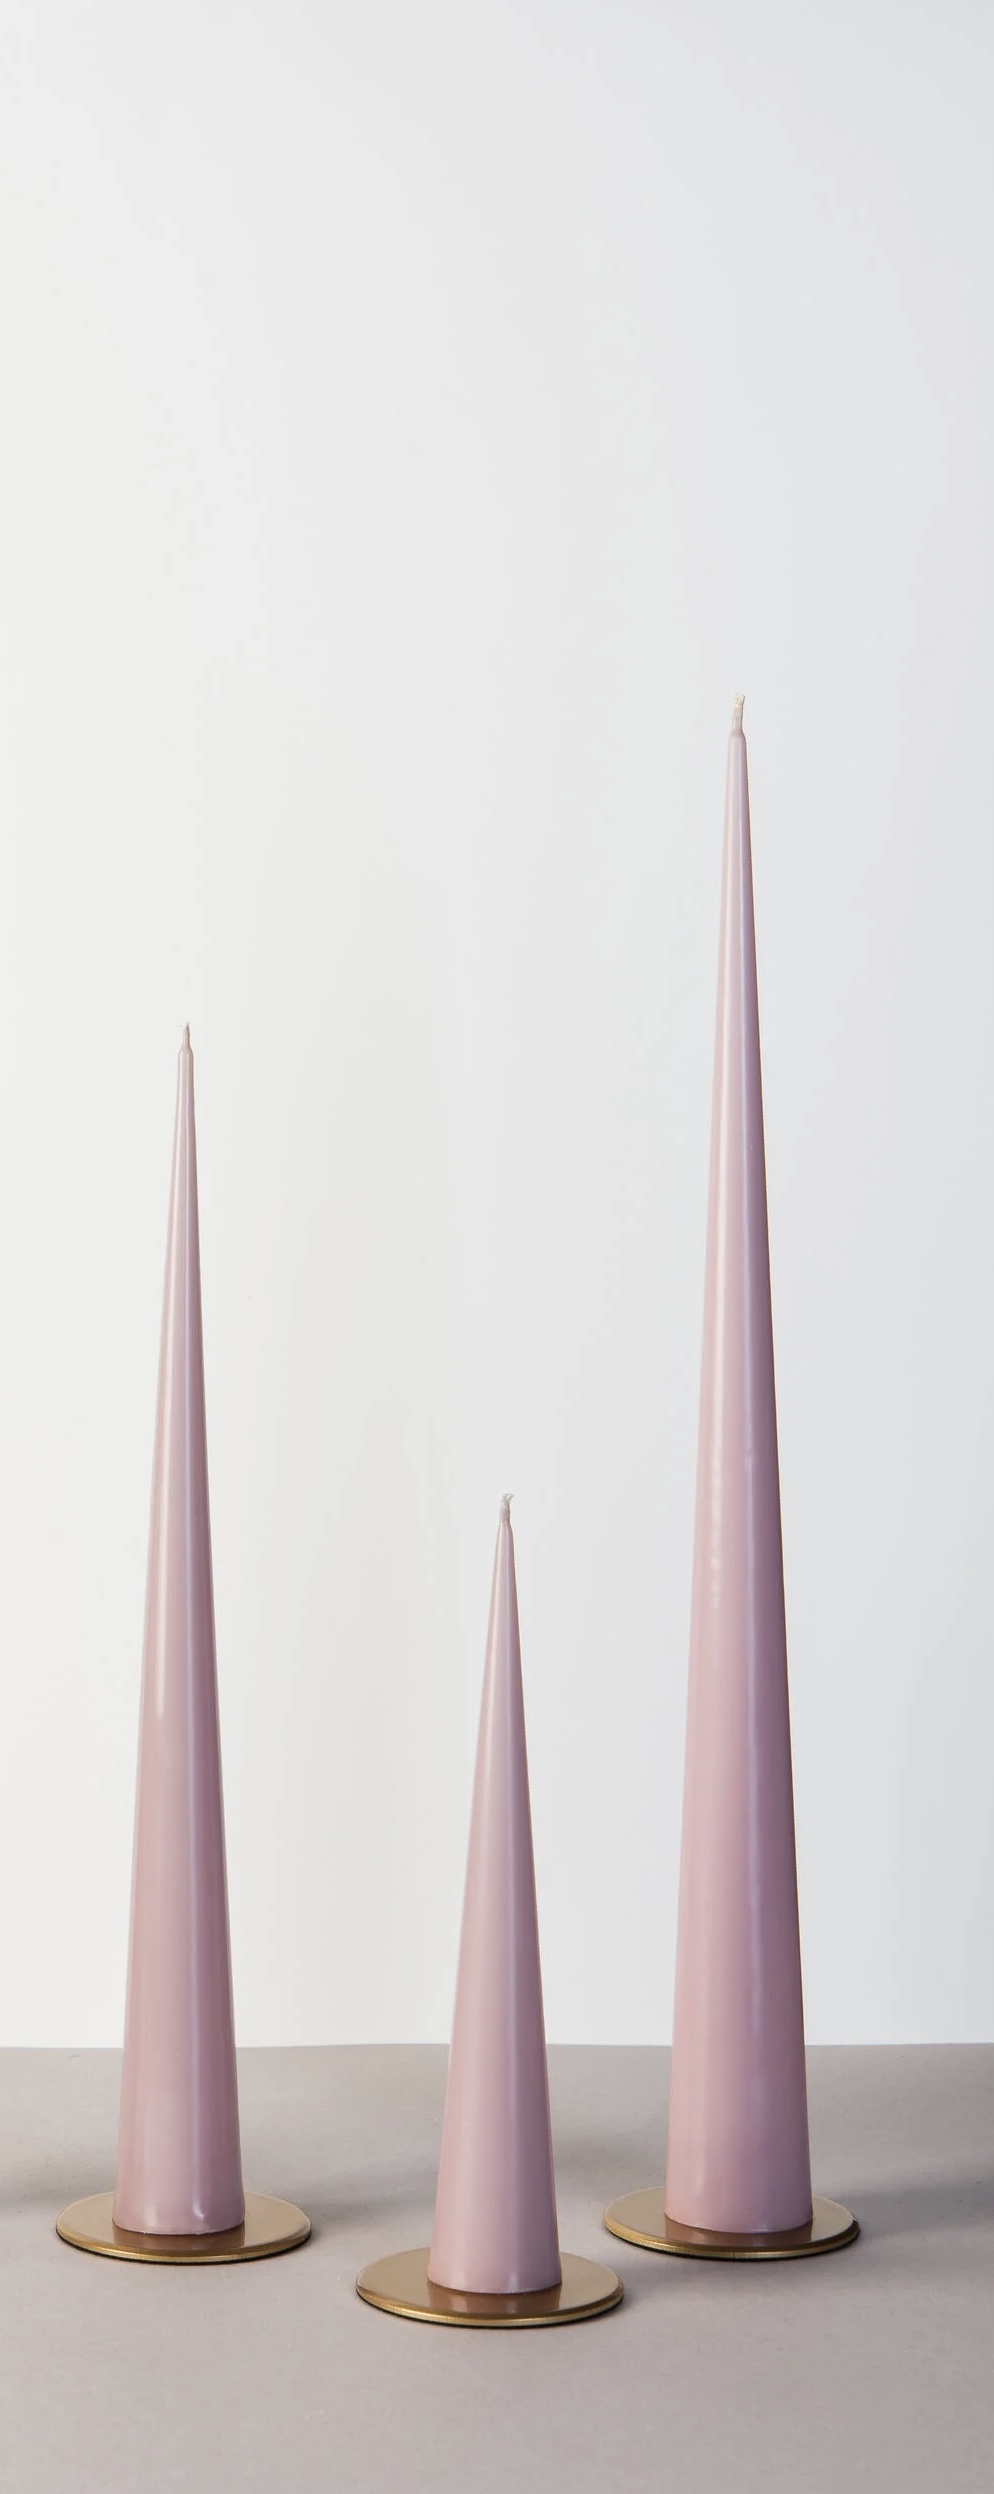 ALD003-7, Свеча конусная (10 часов), 25х4,2 см, холодный розовый, 2009980180298,4627197642422